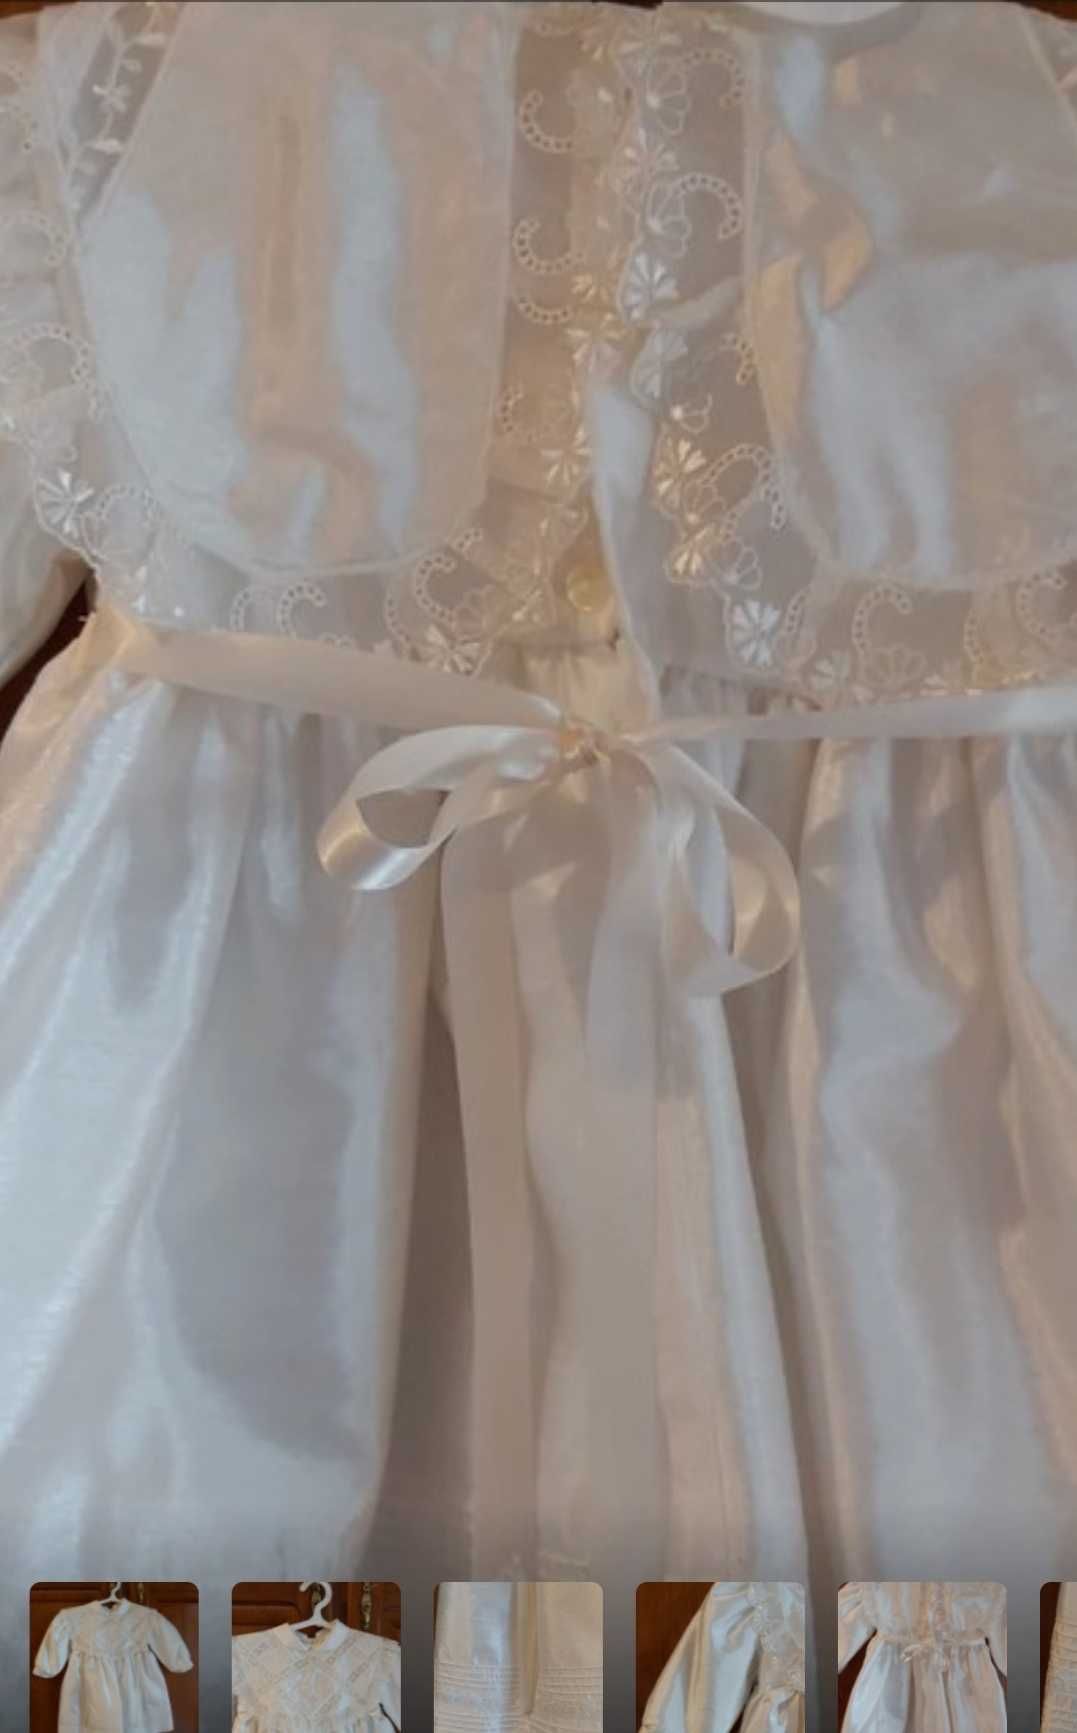 Aproveita barato e bom,este lindo vestido de Batizado de bebé